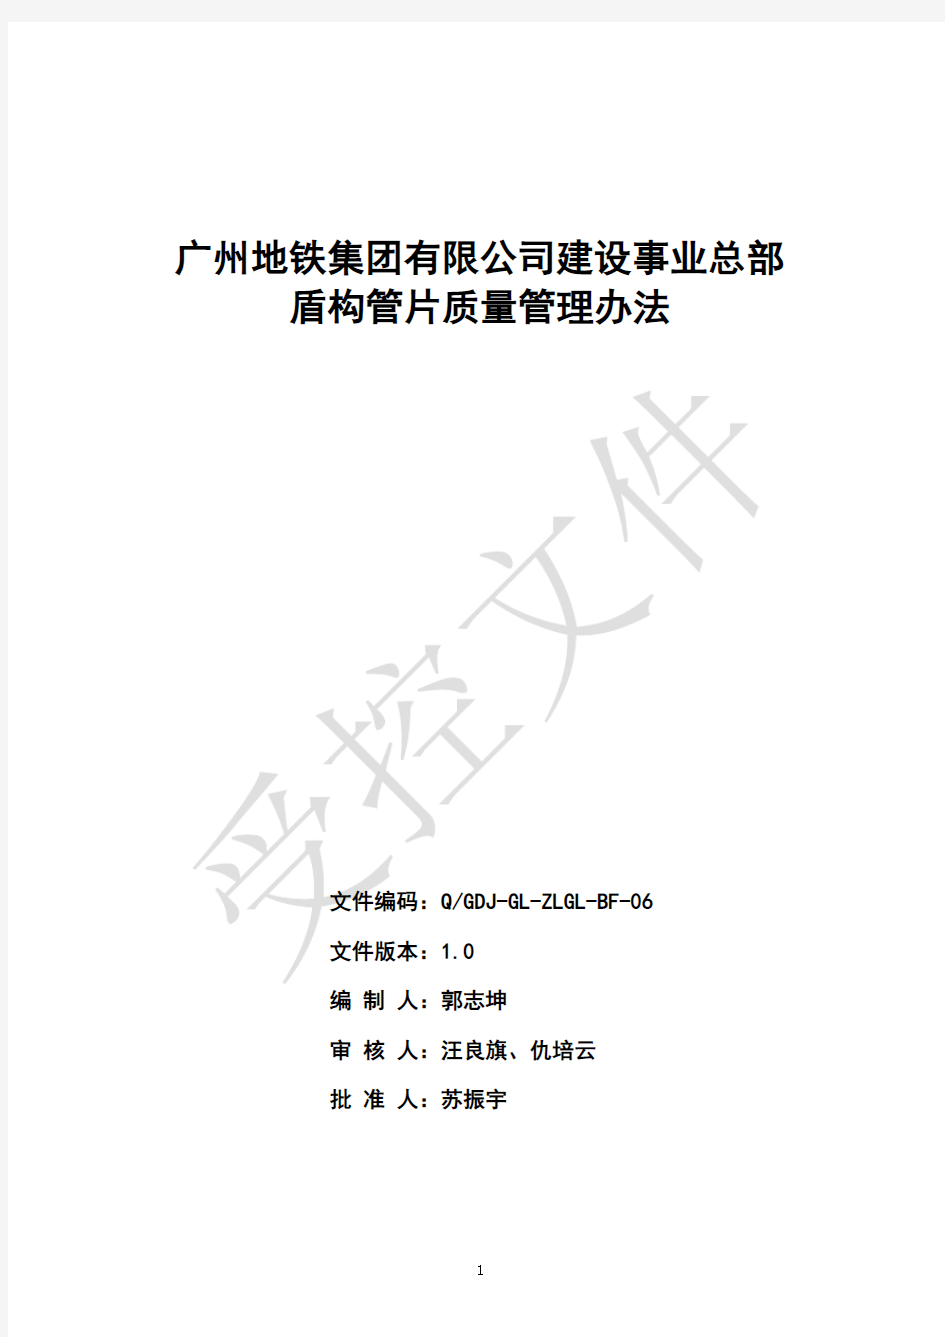 广州地铁集团有限公司建设事业总部盾构管片质量管理办法(征求意见稿)